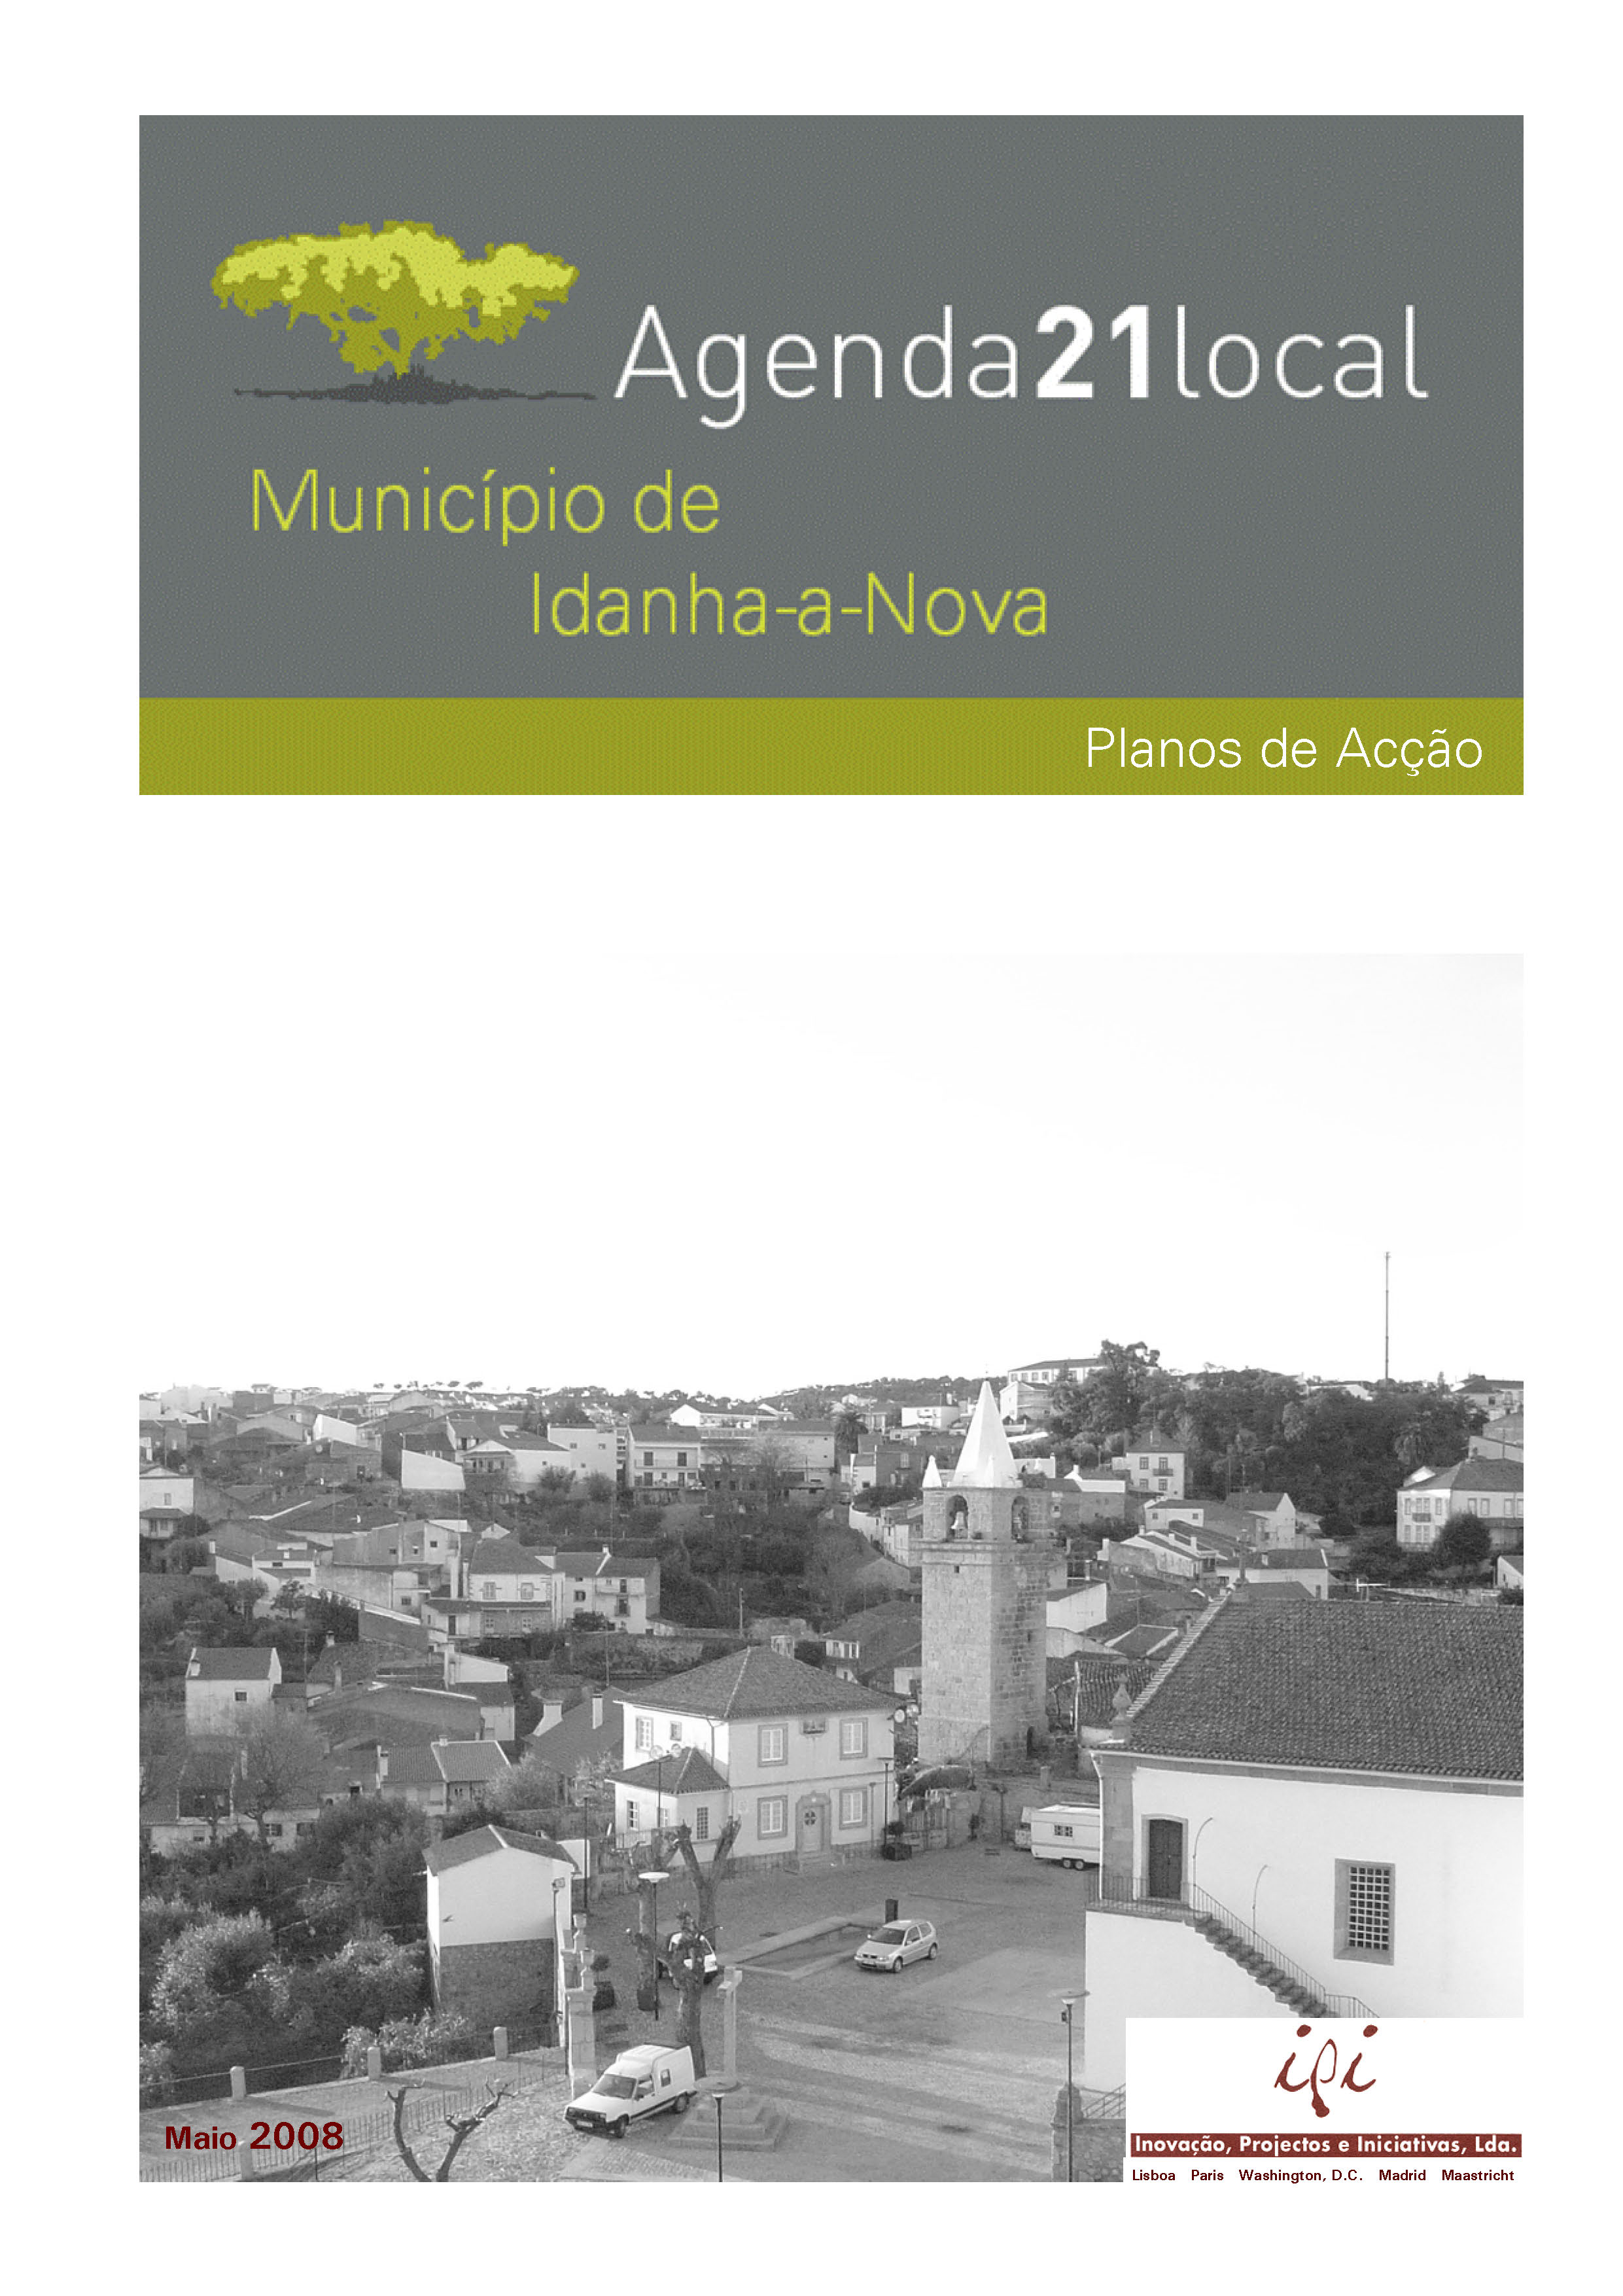 Agenda local 21Planos Accao